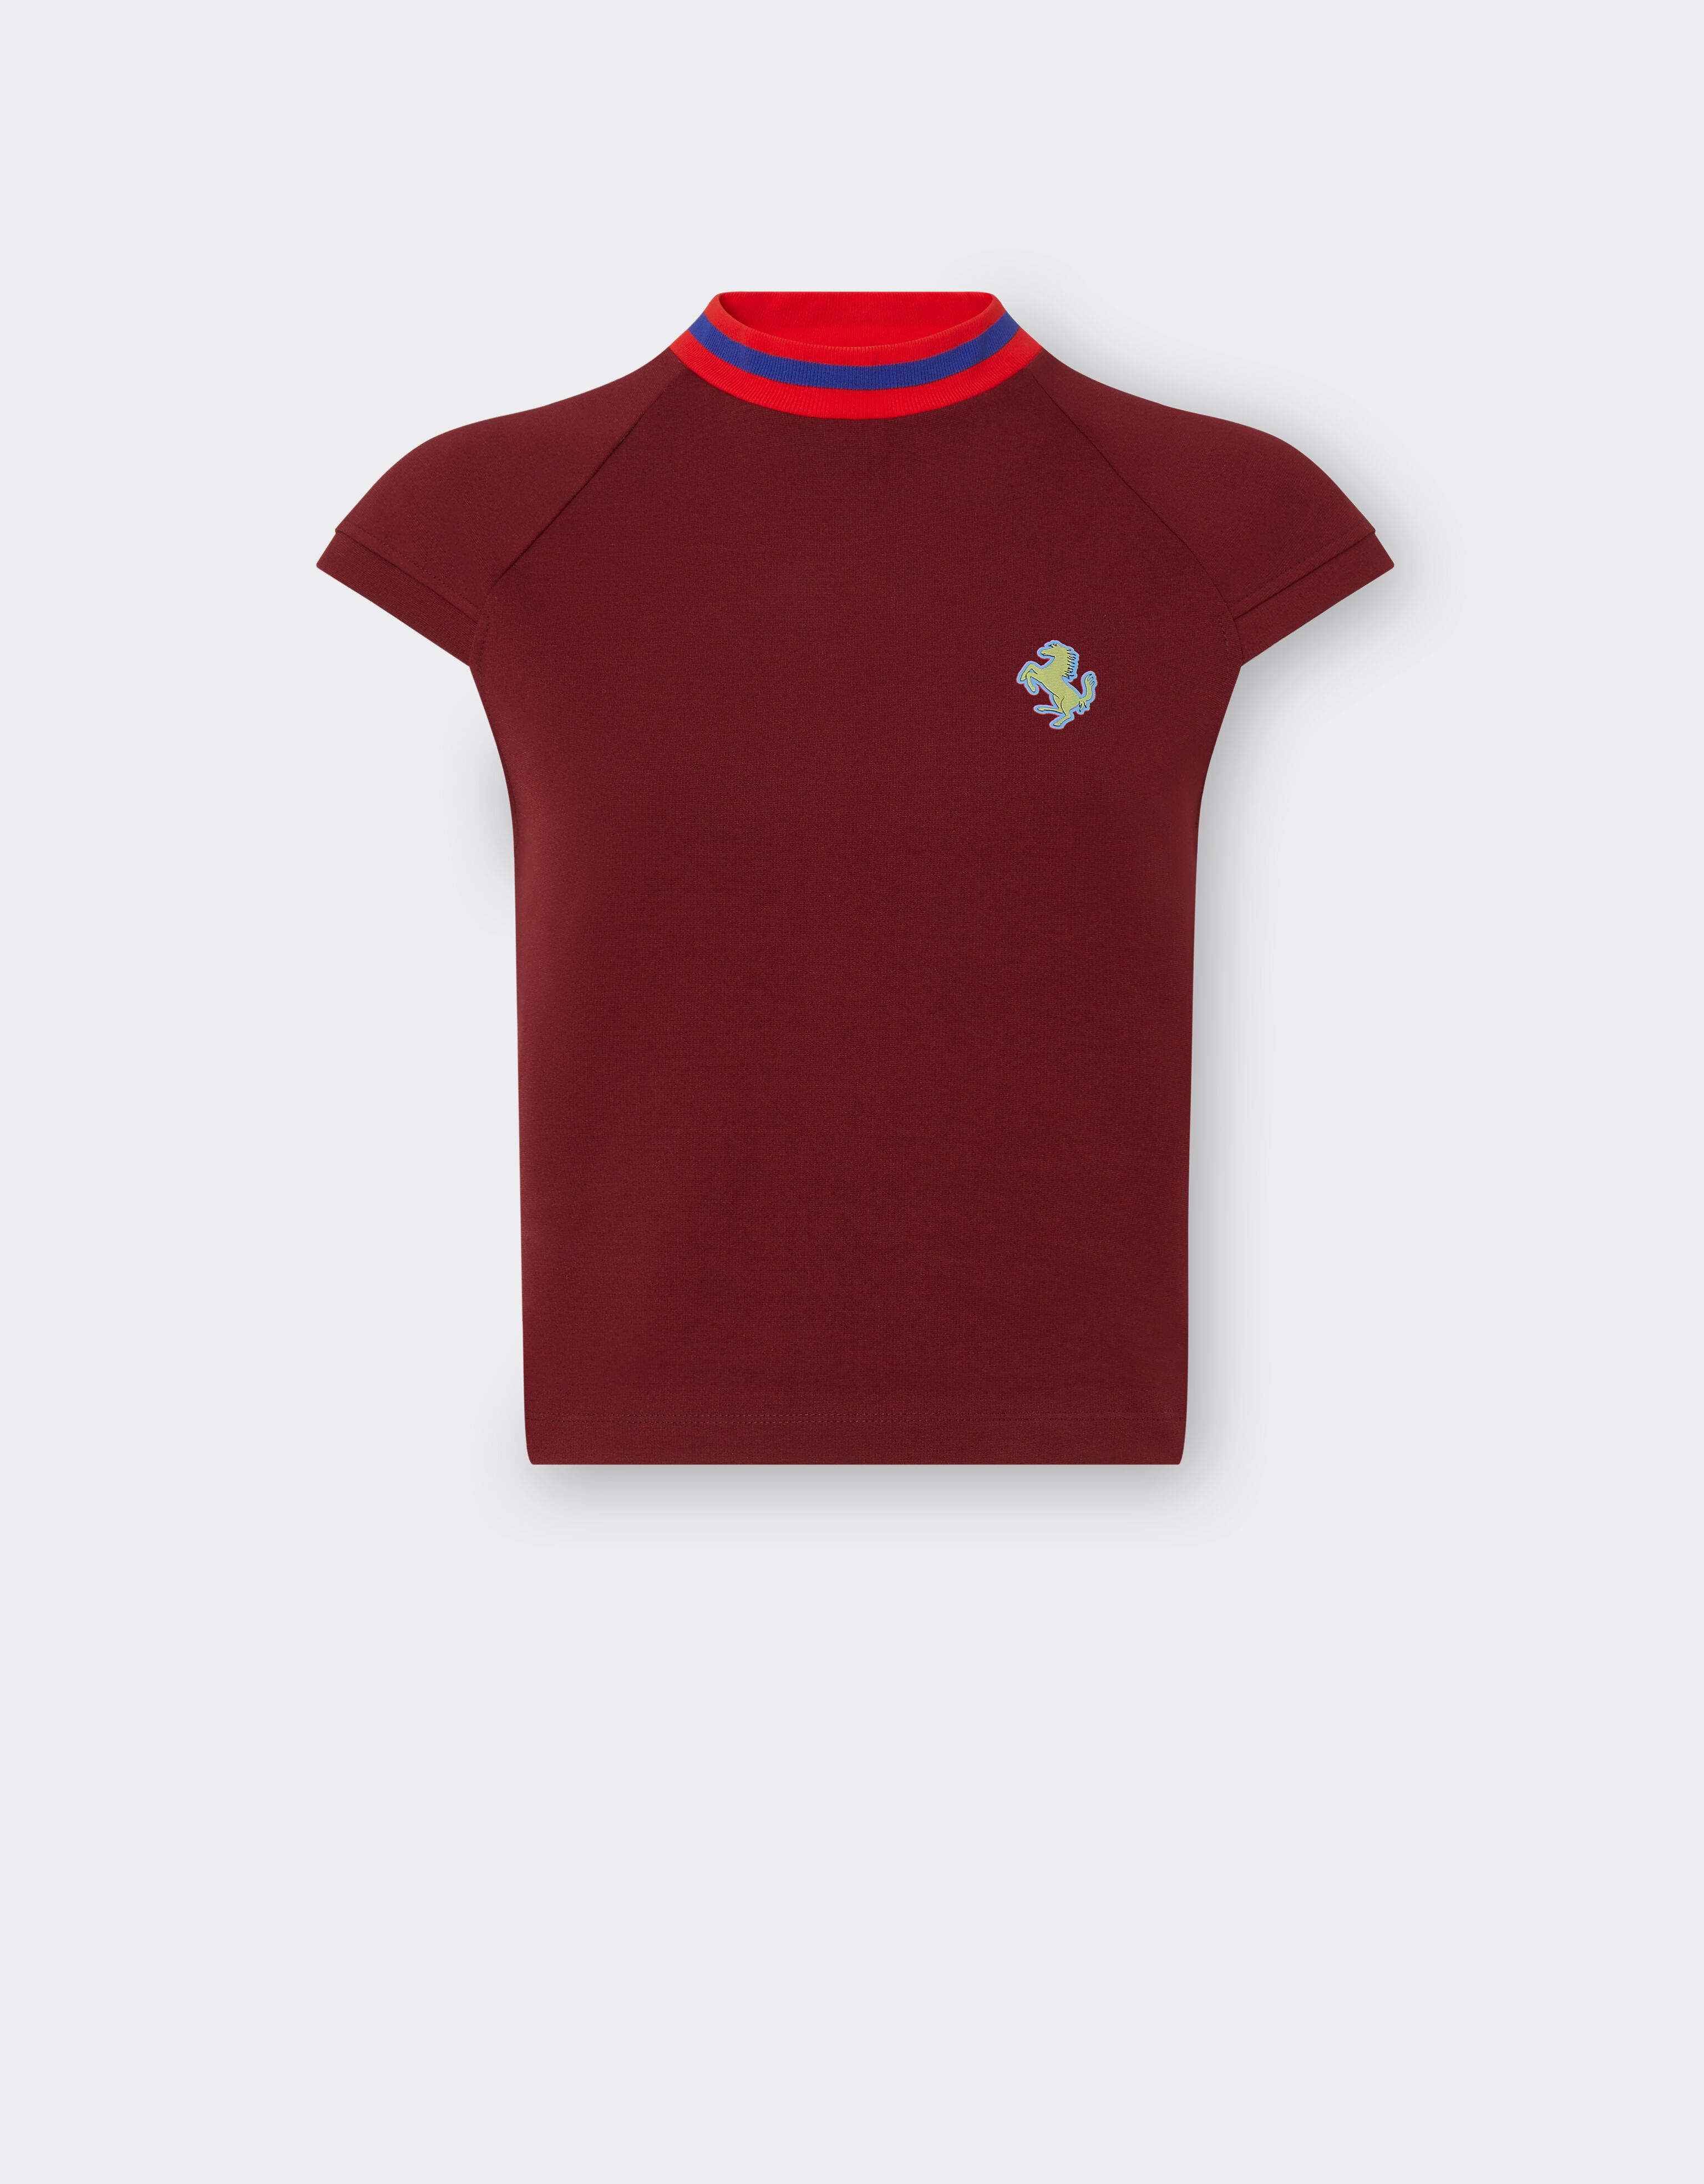 Ferrari 法拉利徽标 T 恤 酒红色 48306f